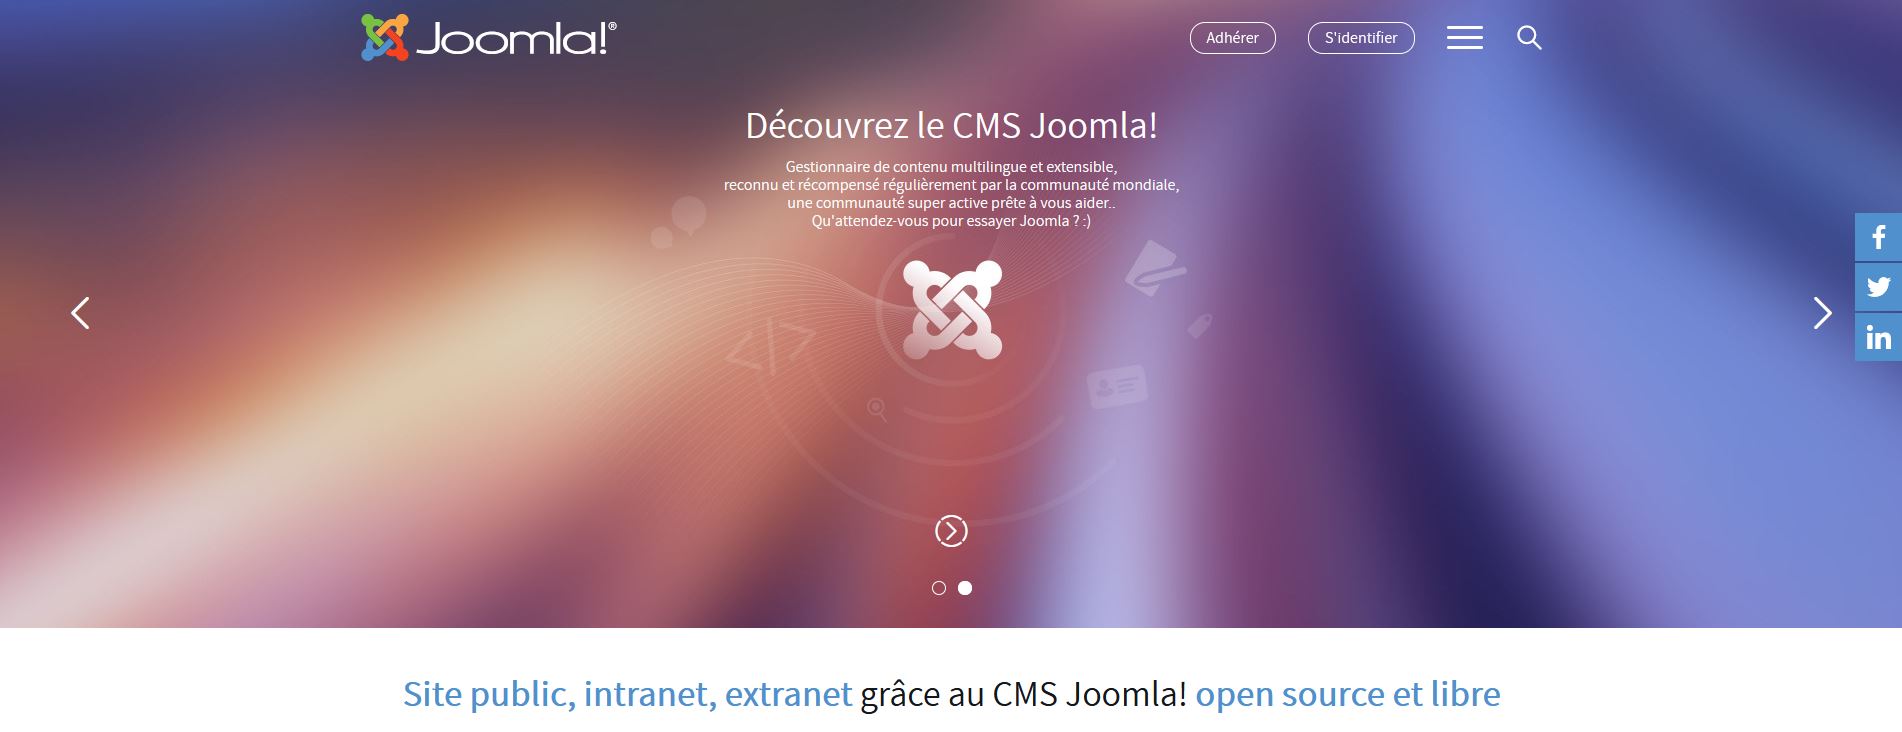 Les CMS classiques - Joomla